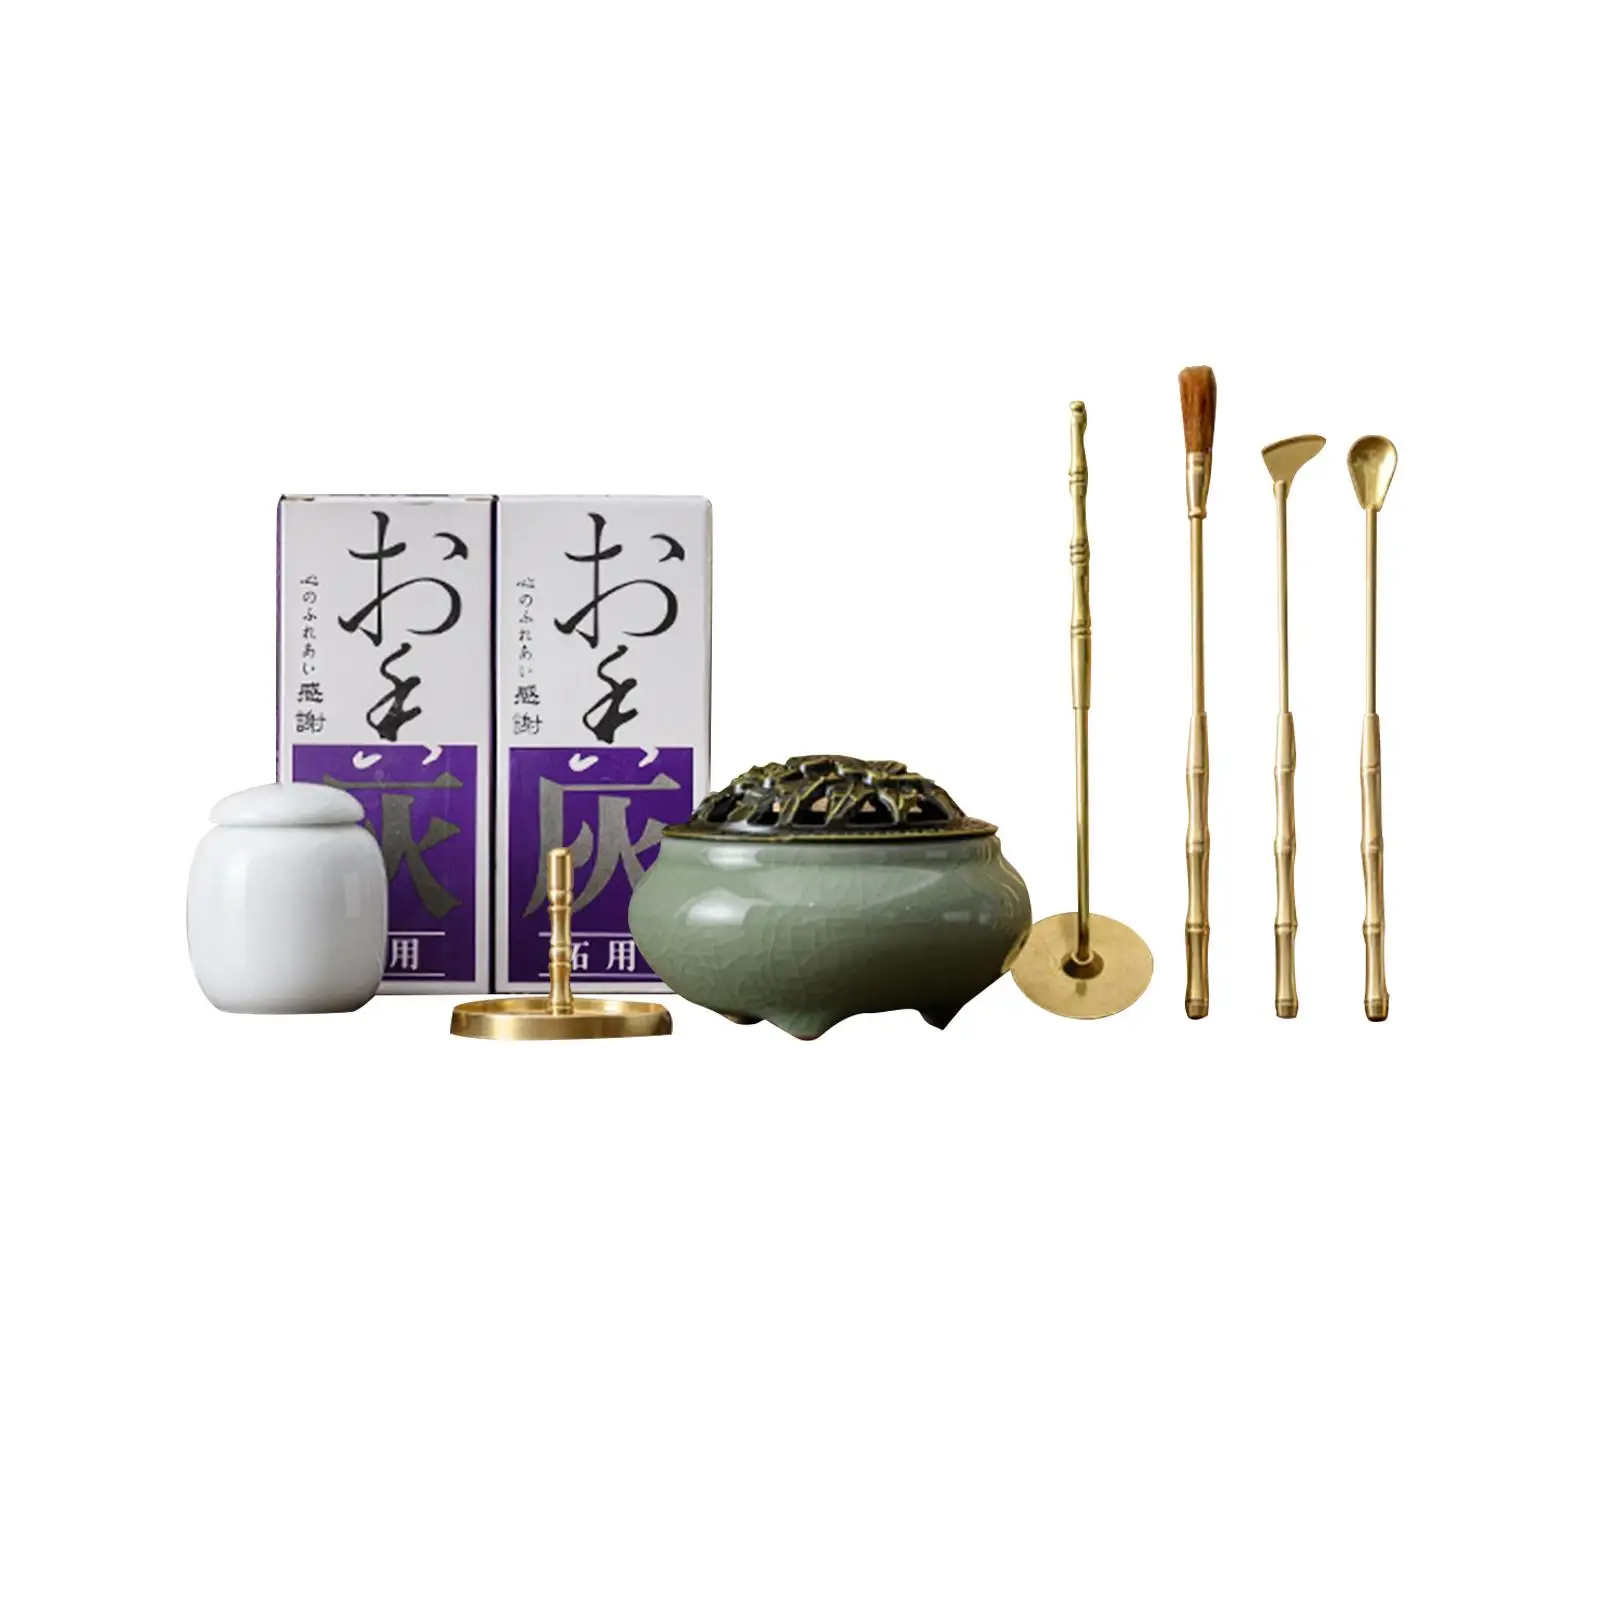 Copper incenses Burner Fragrance tools pressing powders incenses Holder for Yoga